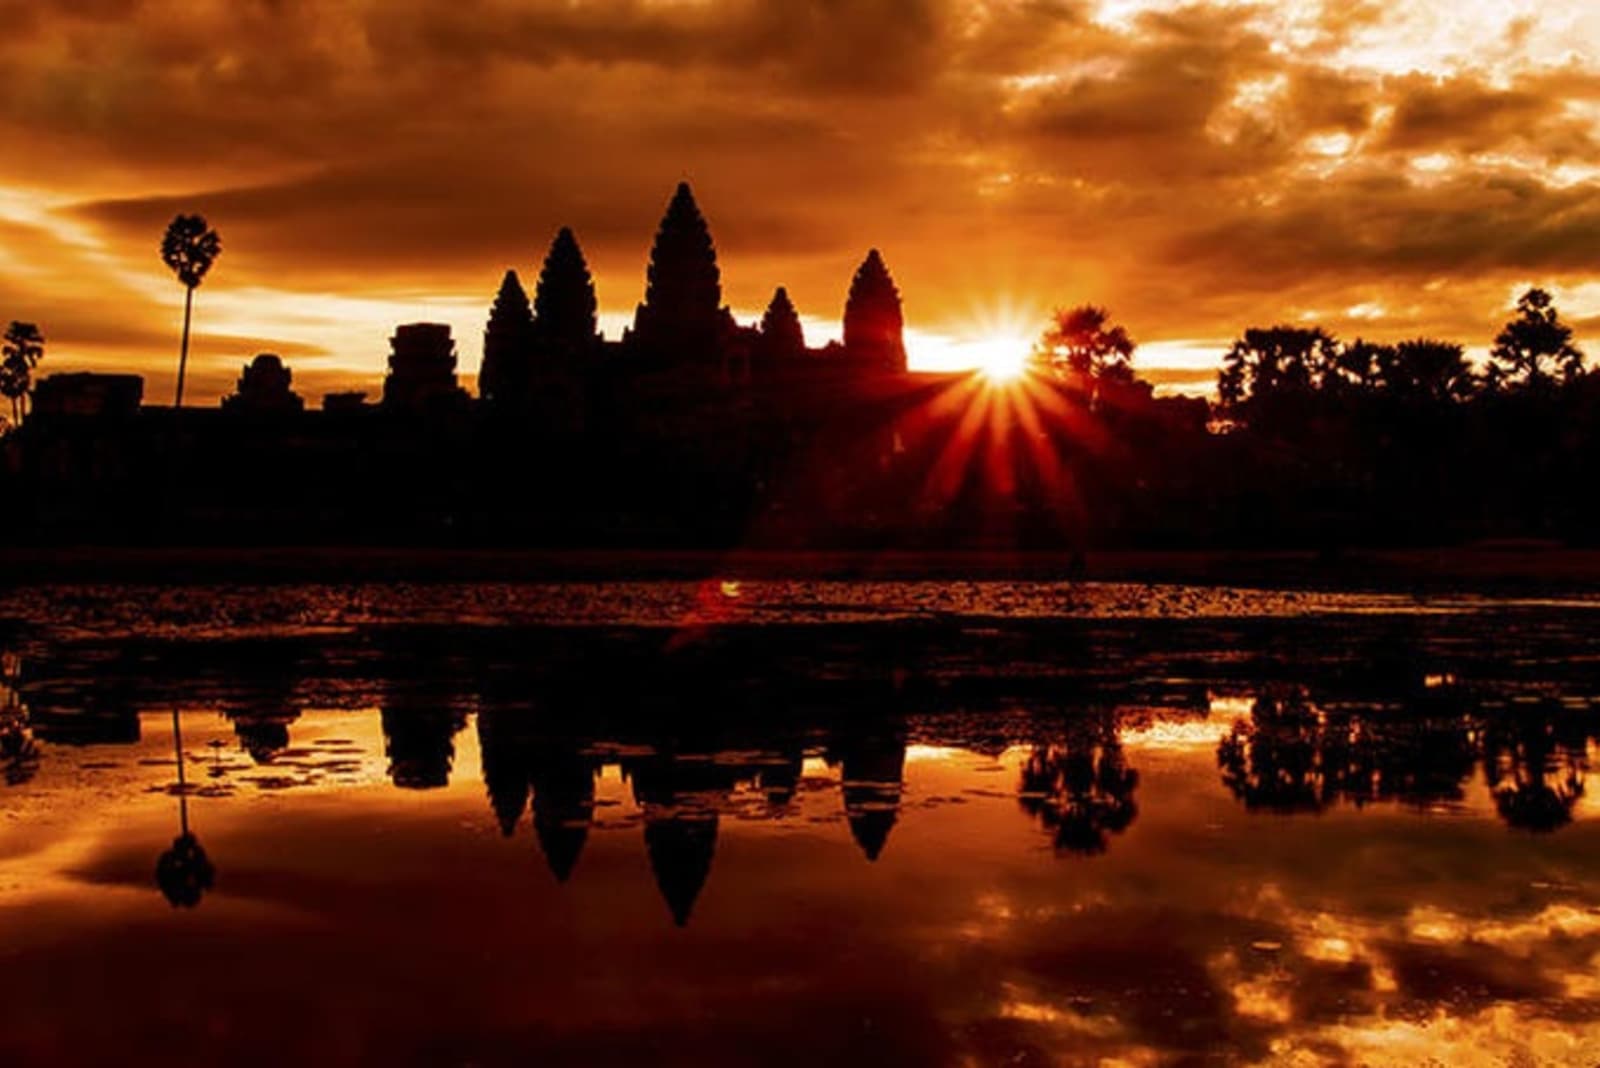 sunrise-at-angkor-wat-cambodia.jpg